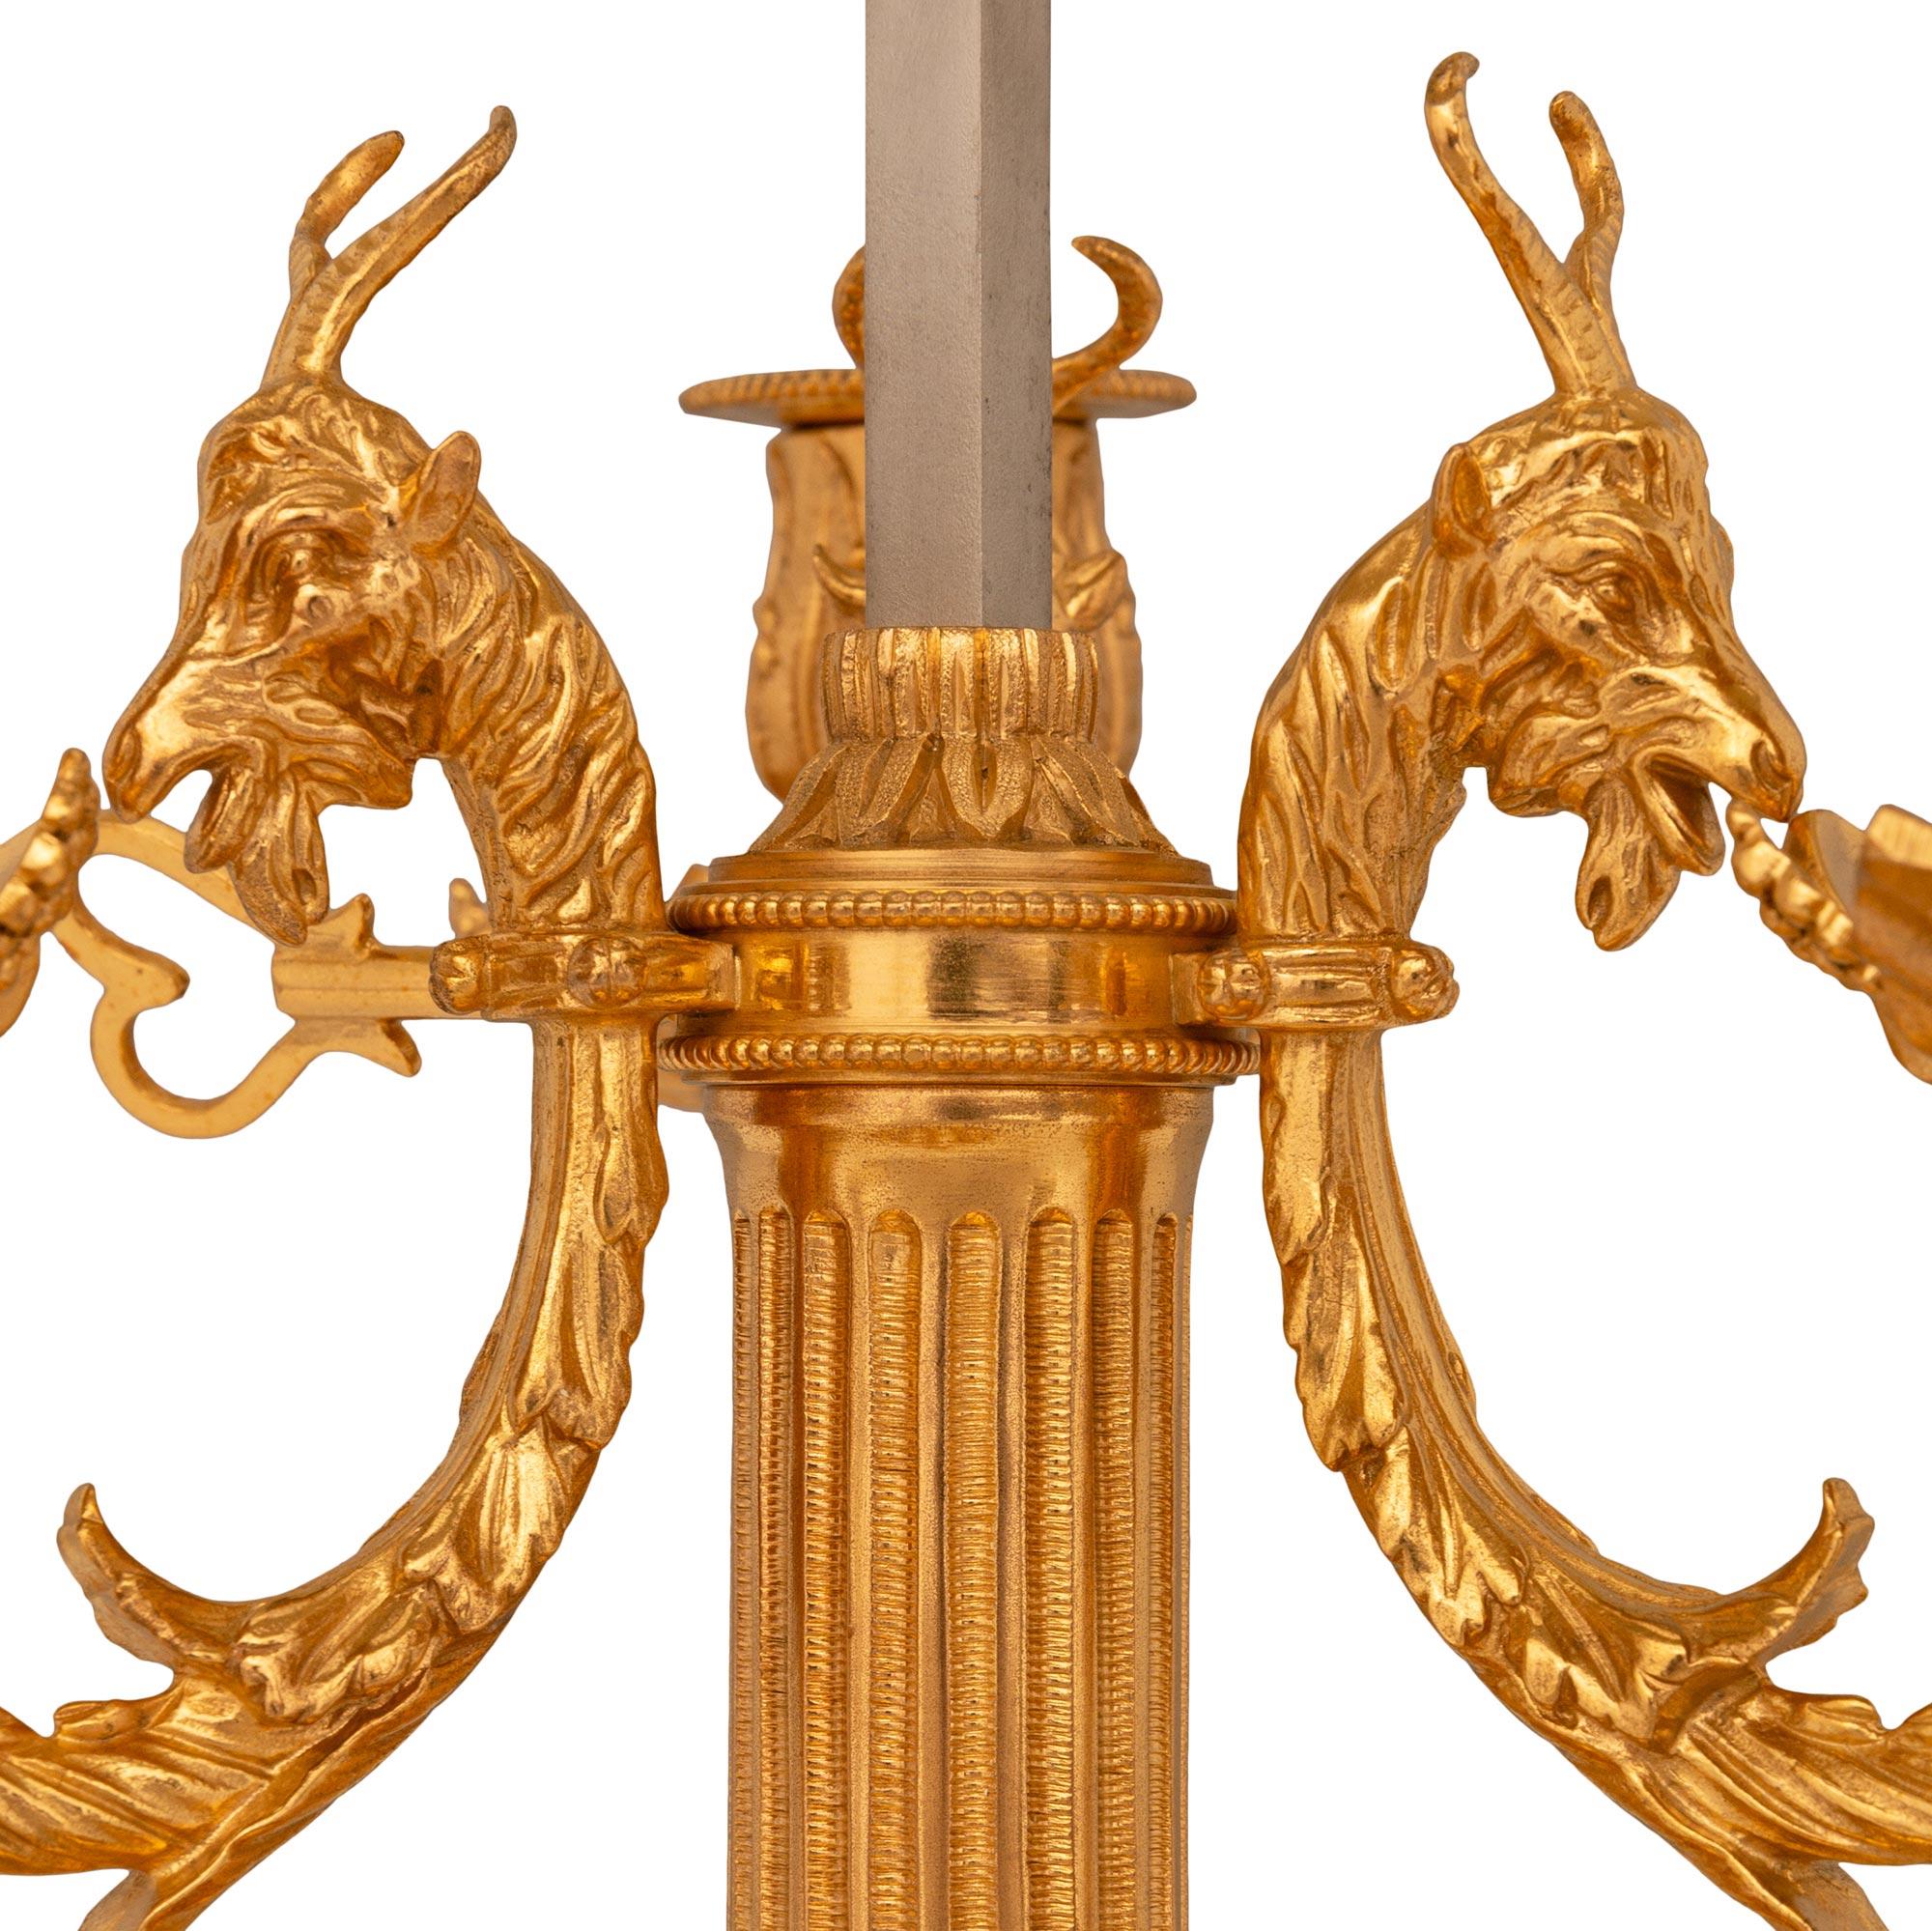 Lampe Bouillotte en tôle et bronze doré de grande qualité et finement décorée, de style Louis XVI, du 19e siècle. Cette exquise lampe à trois bras et deux lumières est soutenue par une base circulaire percée avec des motifs en spirale enveloppants.